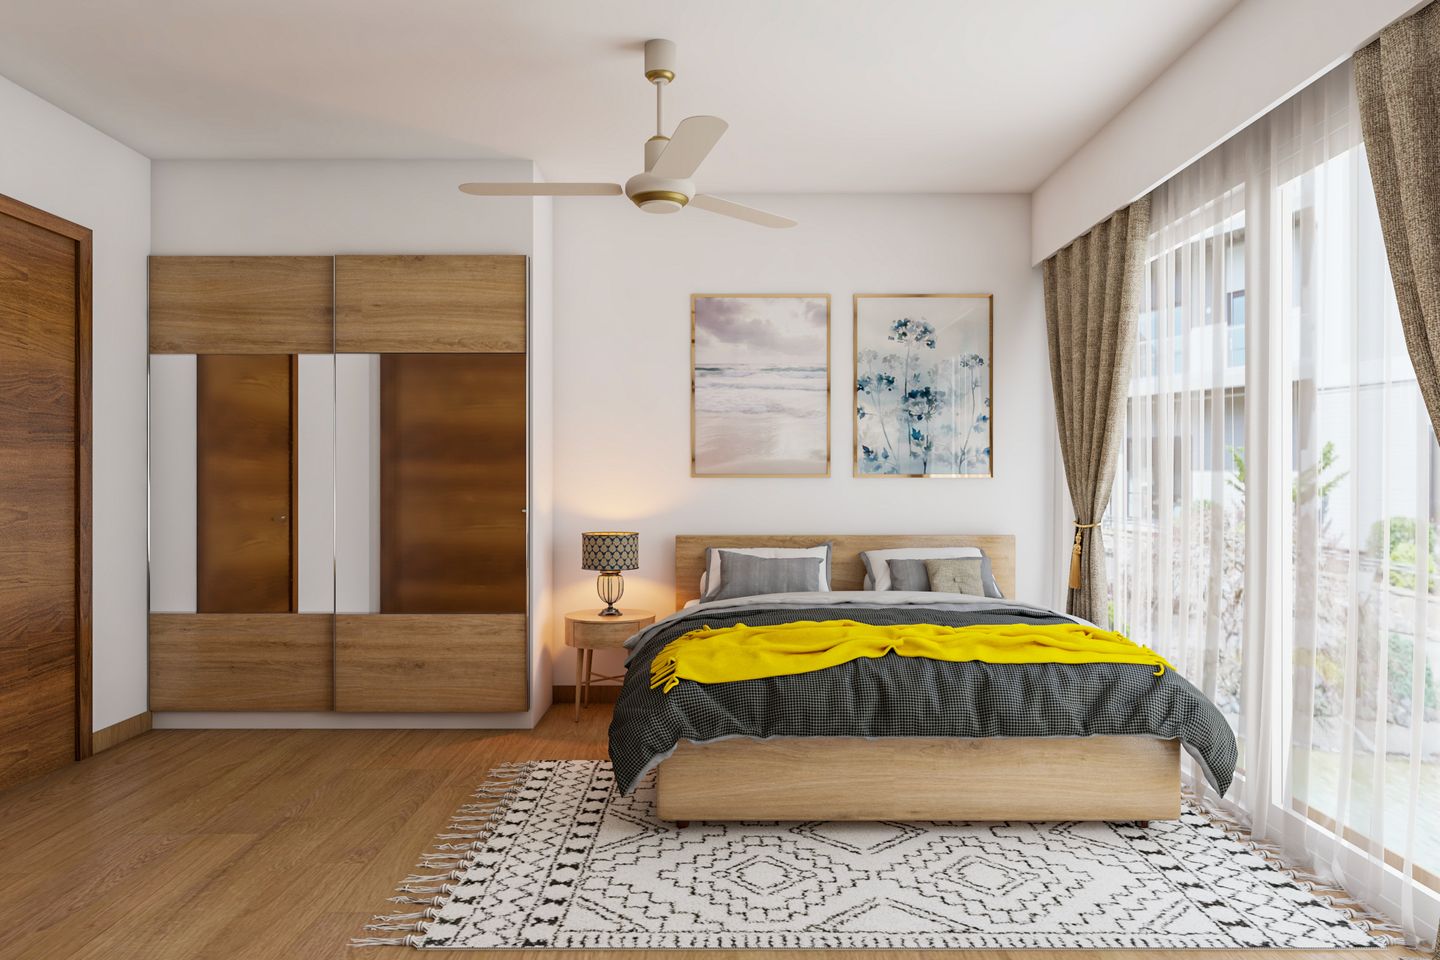 Scandinavian Bedroom Design with Wooden Accents - Livspace